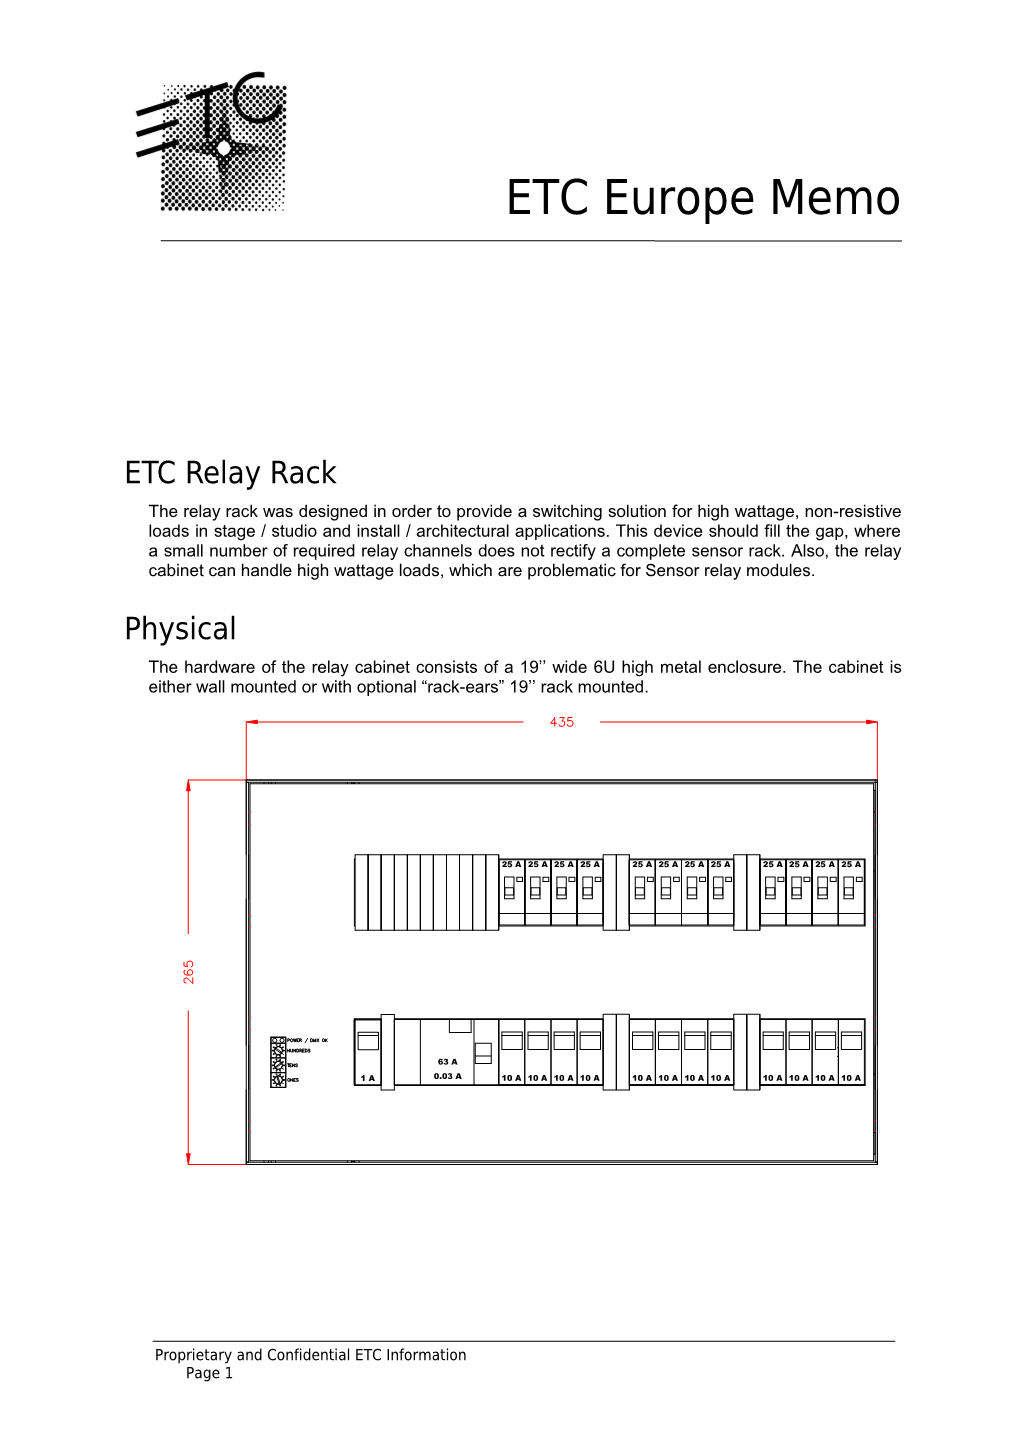 ETC Relay Rack